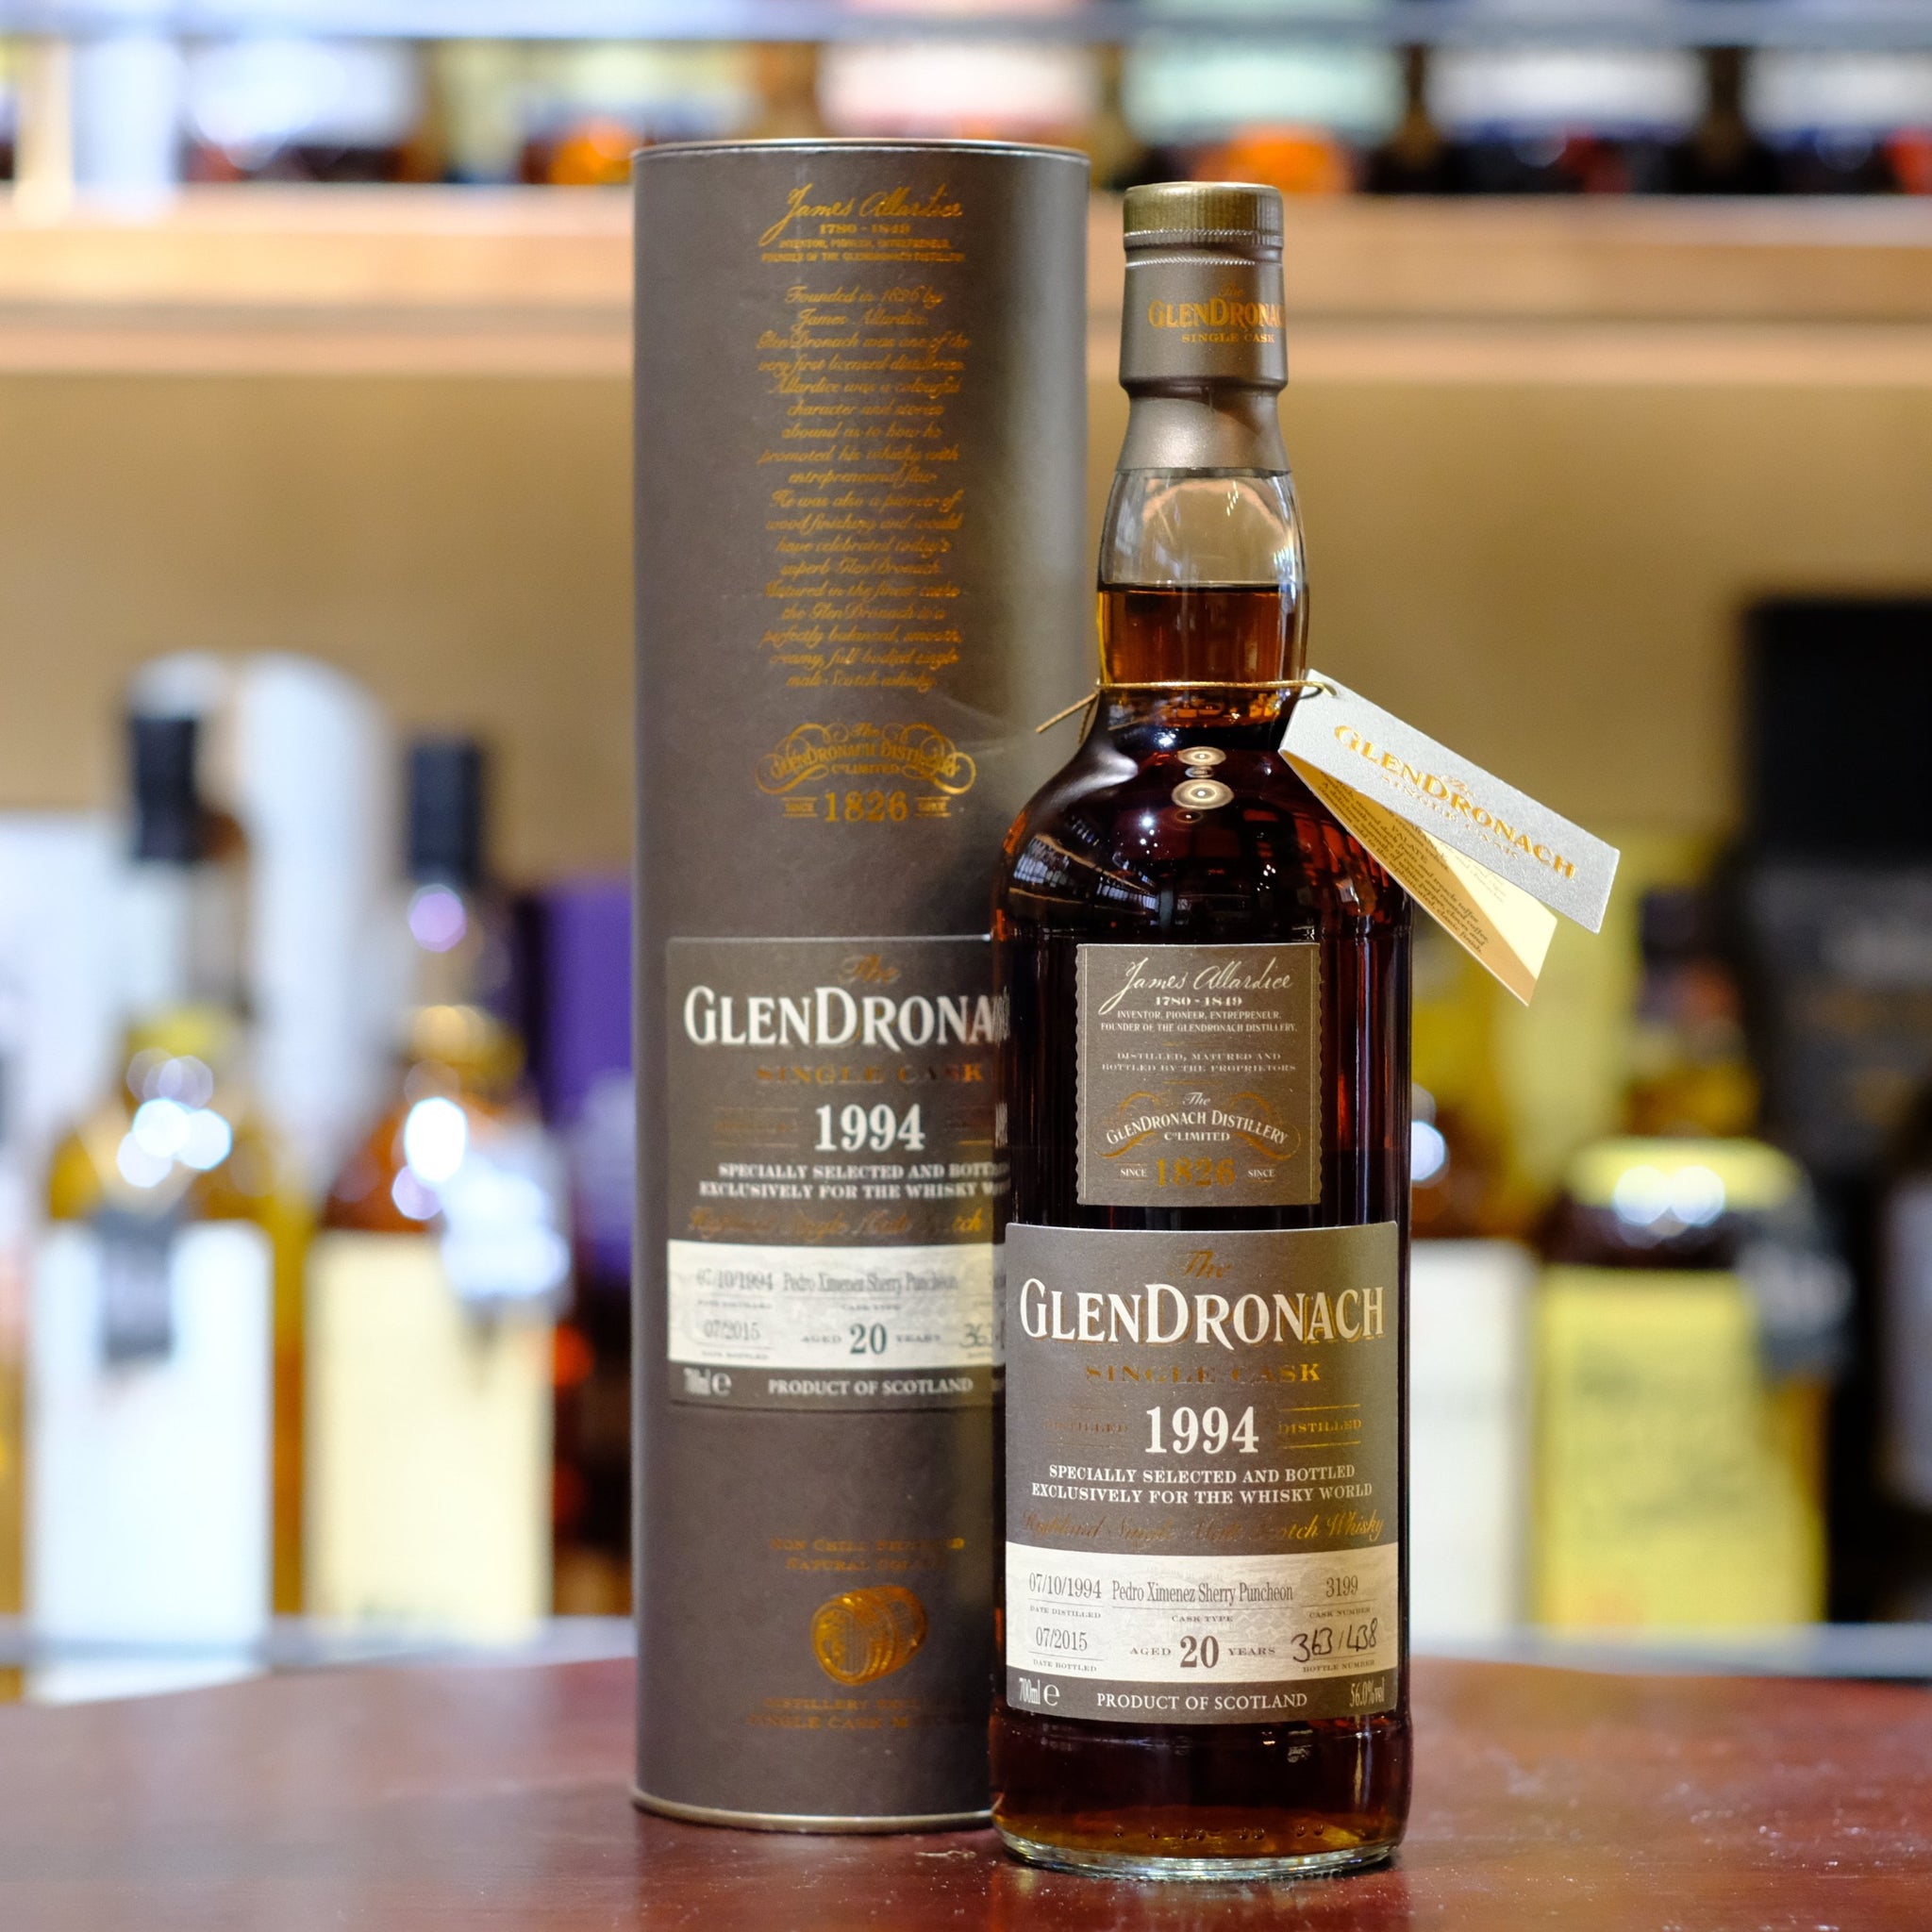 Glendronach 20 Year Old 1994-2015 Single Malt Scotch Whisky (Single Cask #3199)